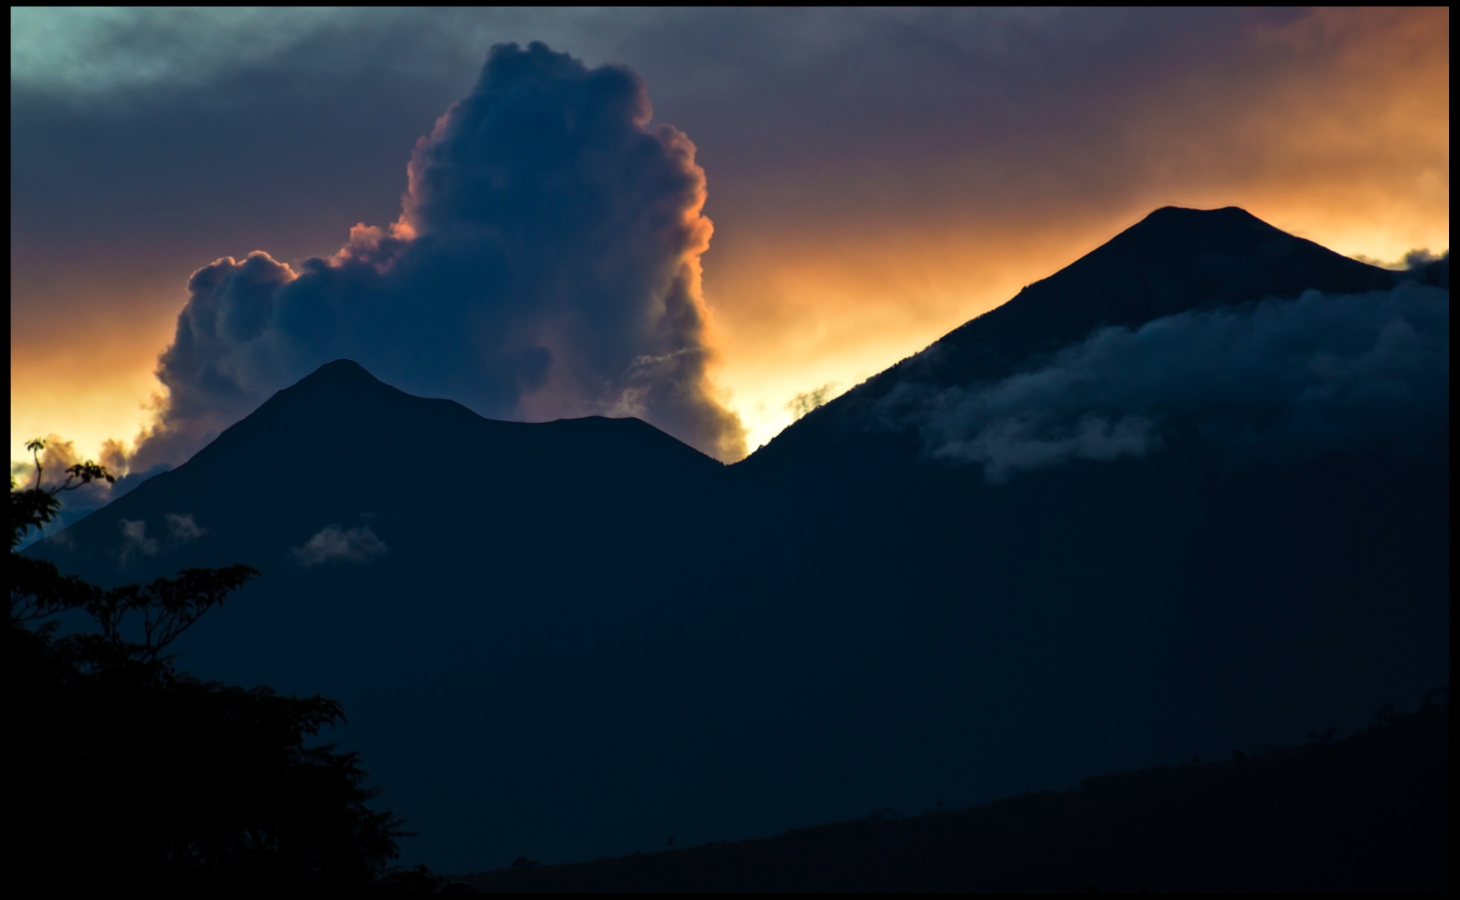 Volcan Acatenango and Volcan Fuego: Fuego y Acatenango - © Flickr user Guillen Perez